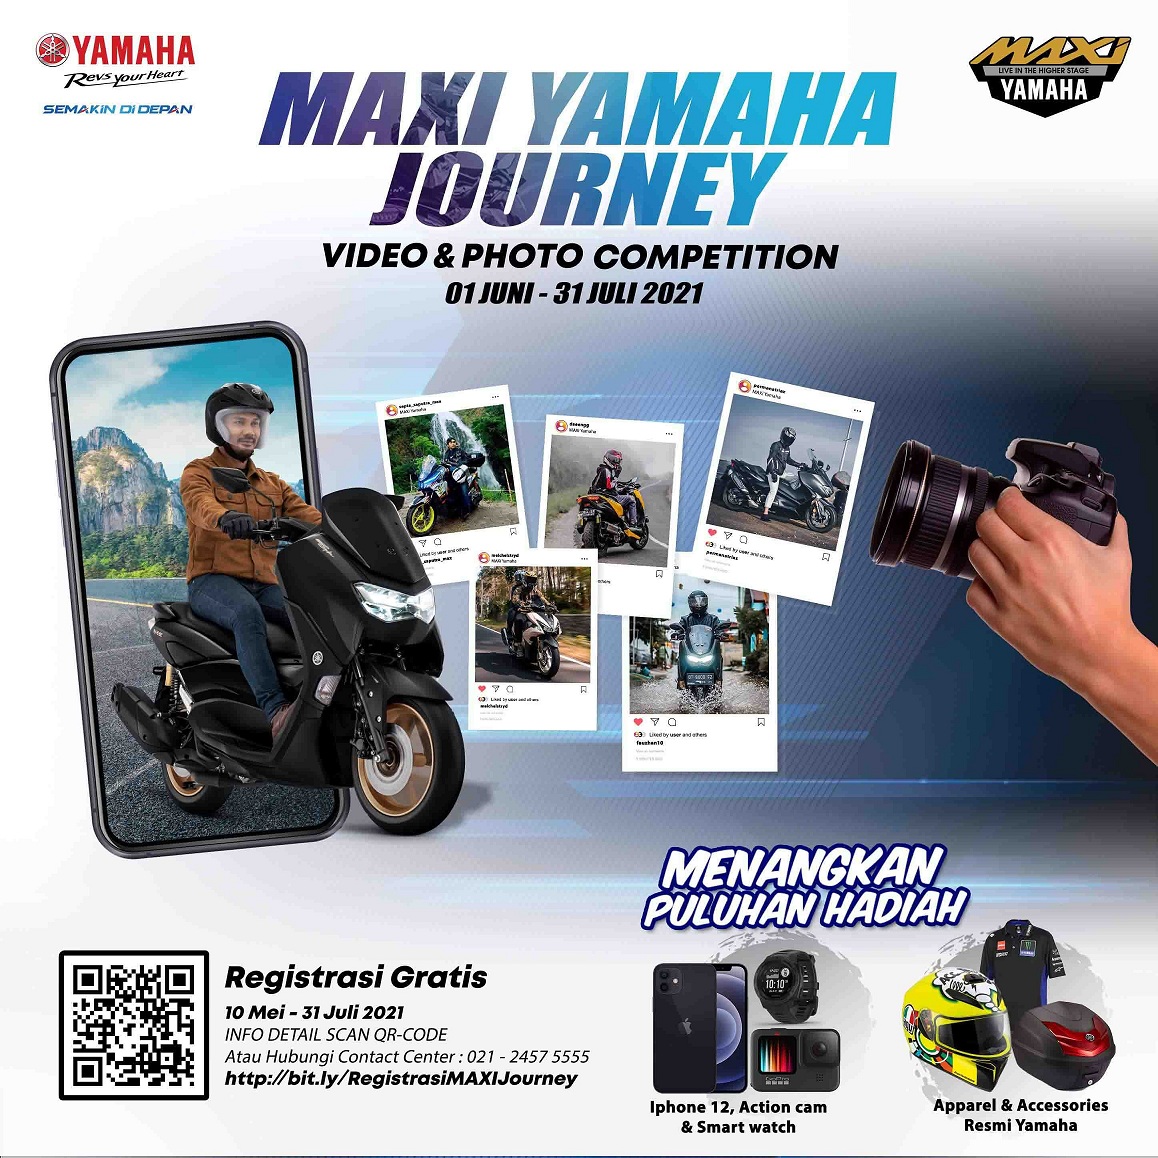 Maxi Yamaha Journey, Kompetisi Video dan Foto Pengguna Maxi Yamaha